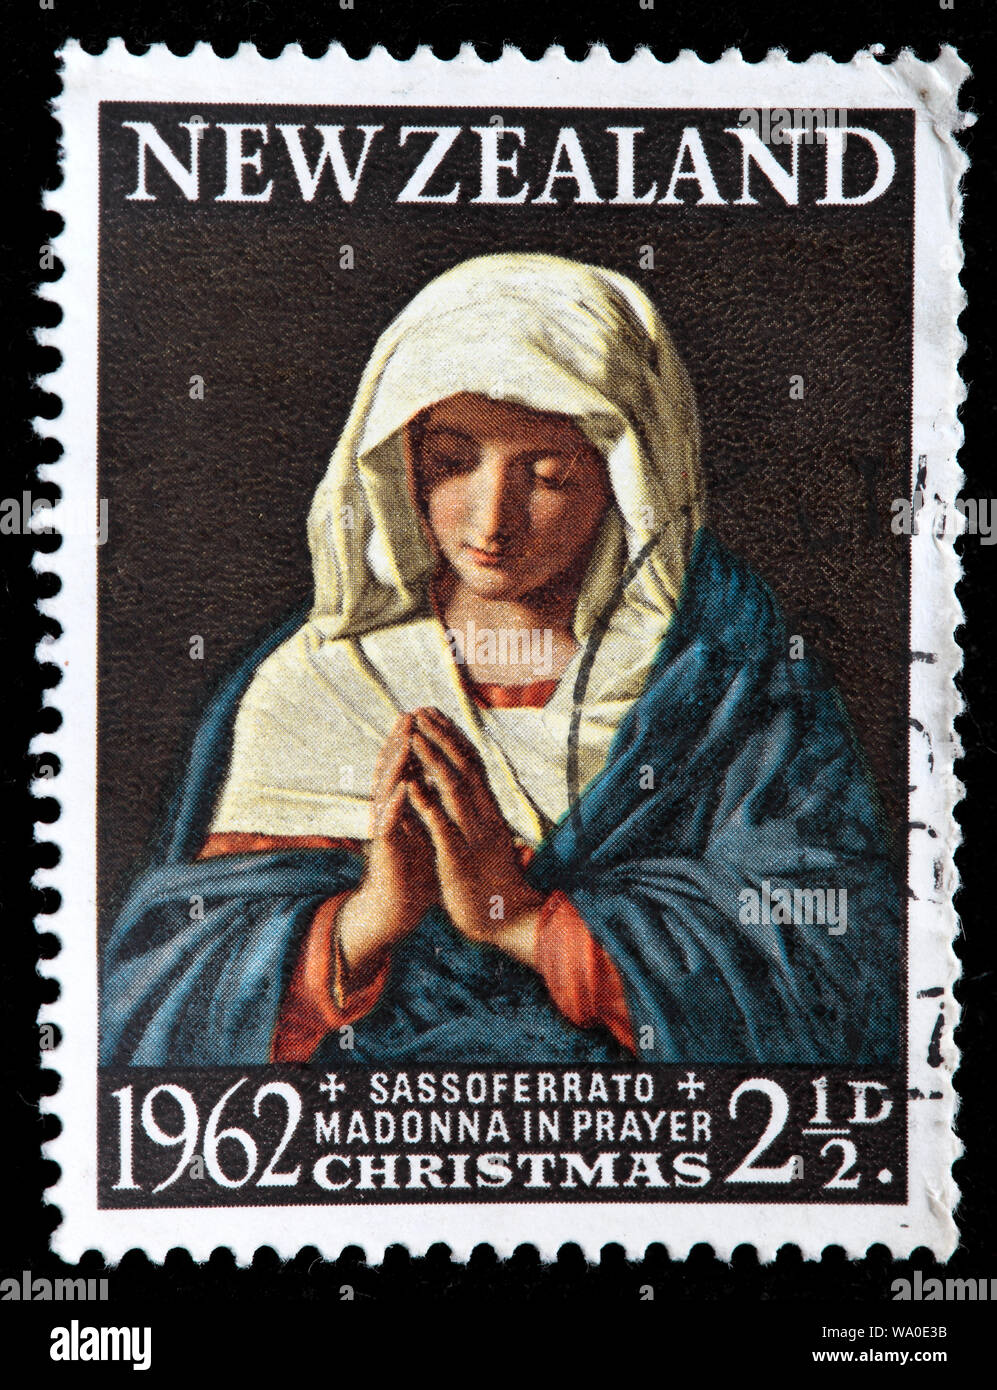 Madonna dans la prière, Noël, timbre-poste, Nouvelle-Zélande, 1962 Banque D'Images